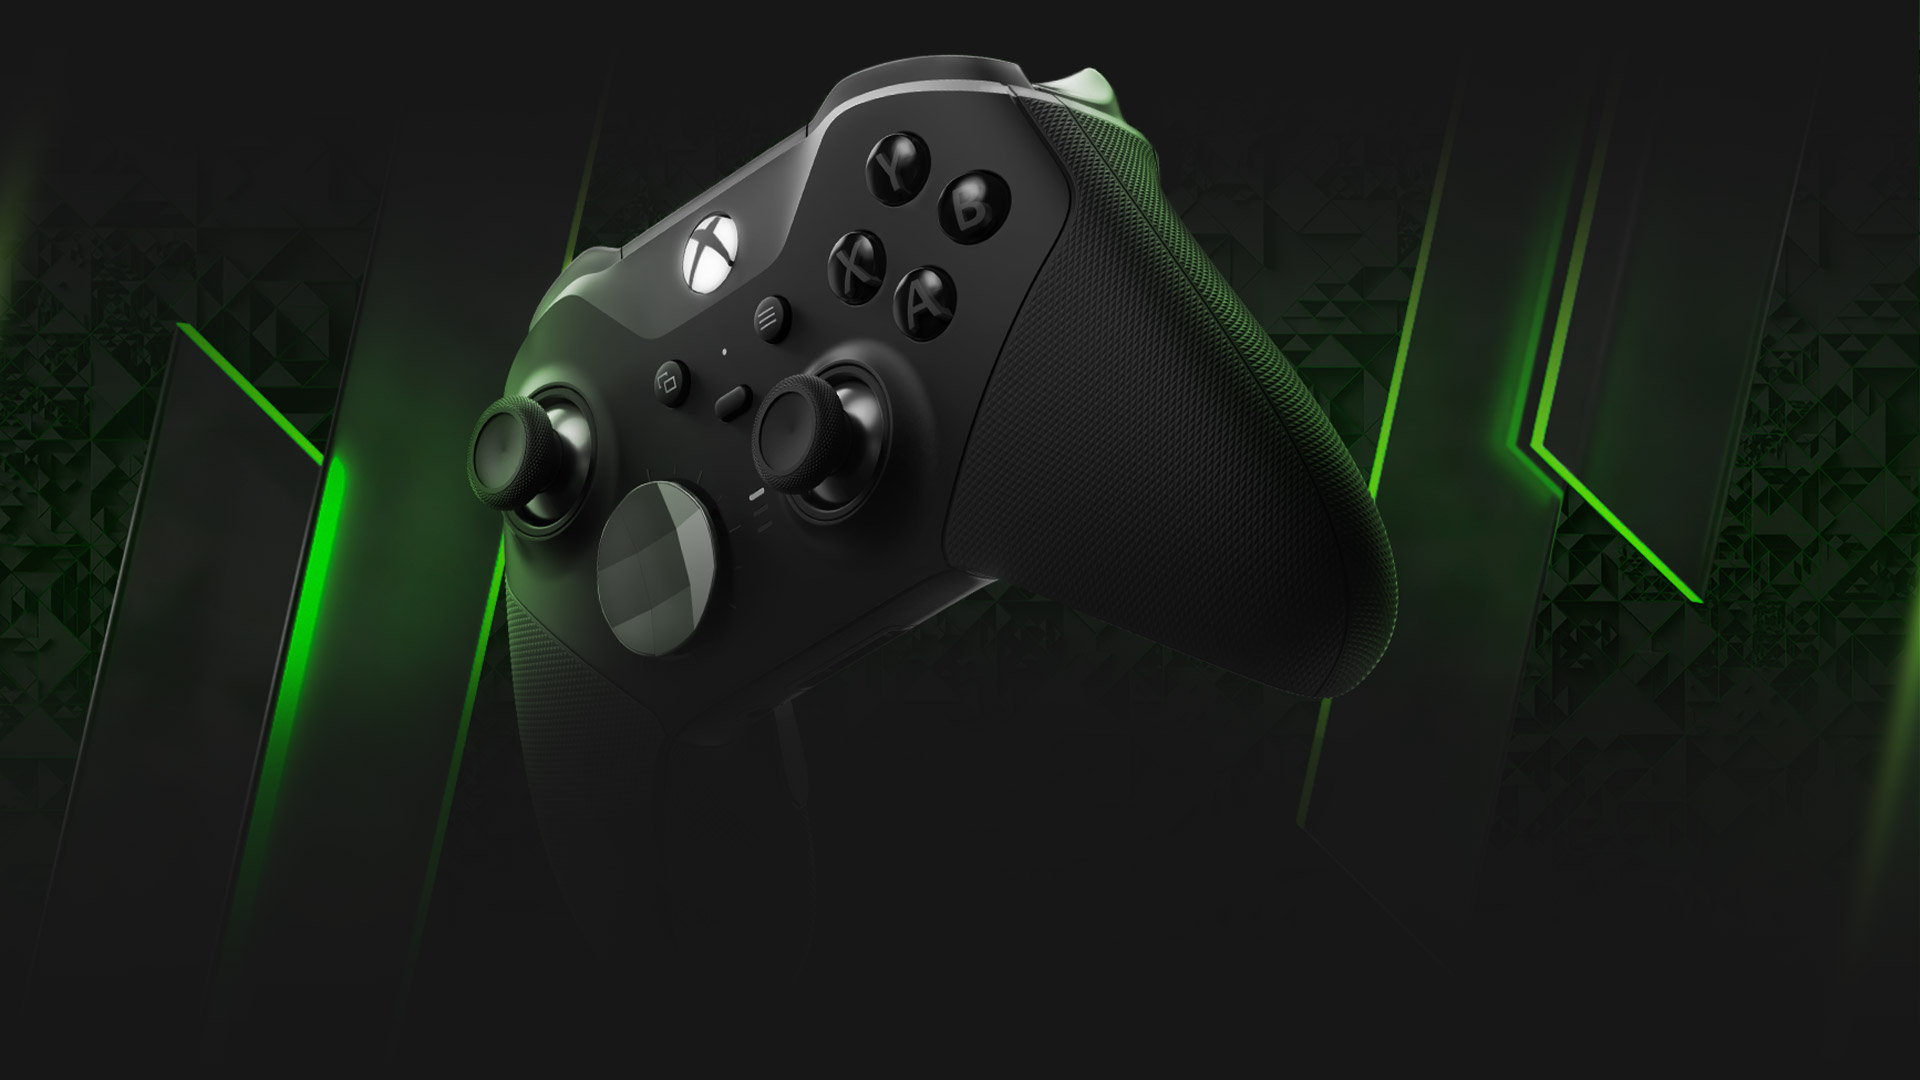 Manette sans fil Xbox Elite Series 2 devant un arrière-plan à motifs verts et noirs.